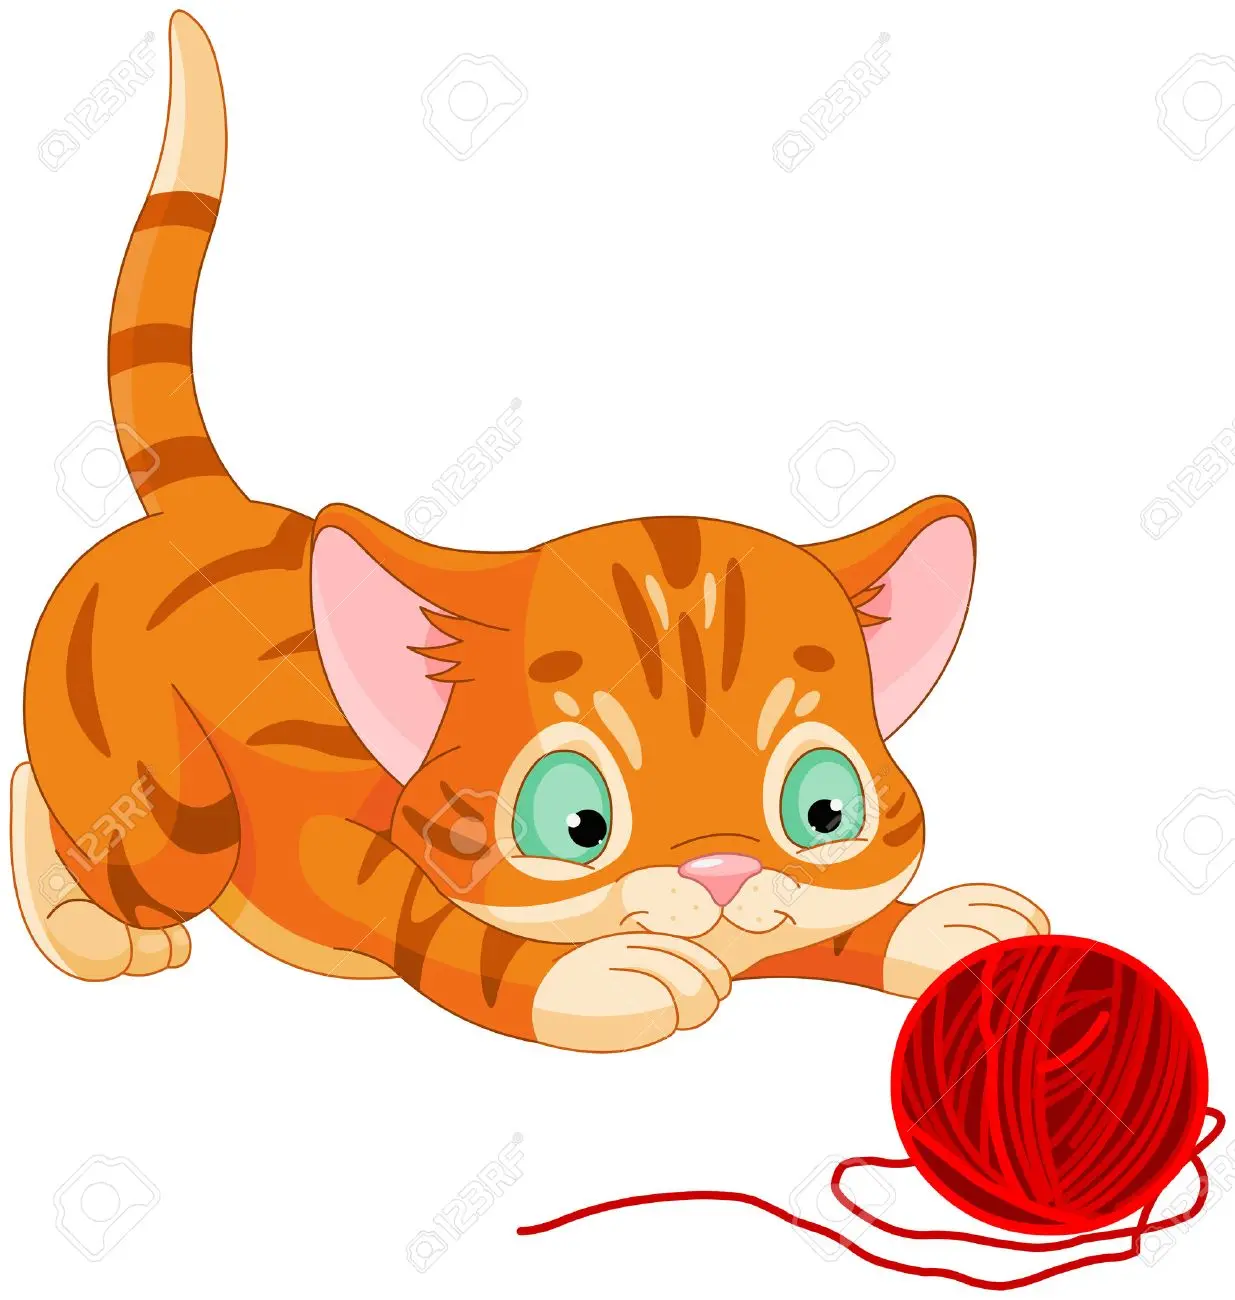 dibujo de gato jugando con lana - Cómo se llaman los gatos de Disney